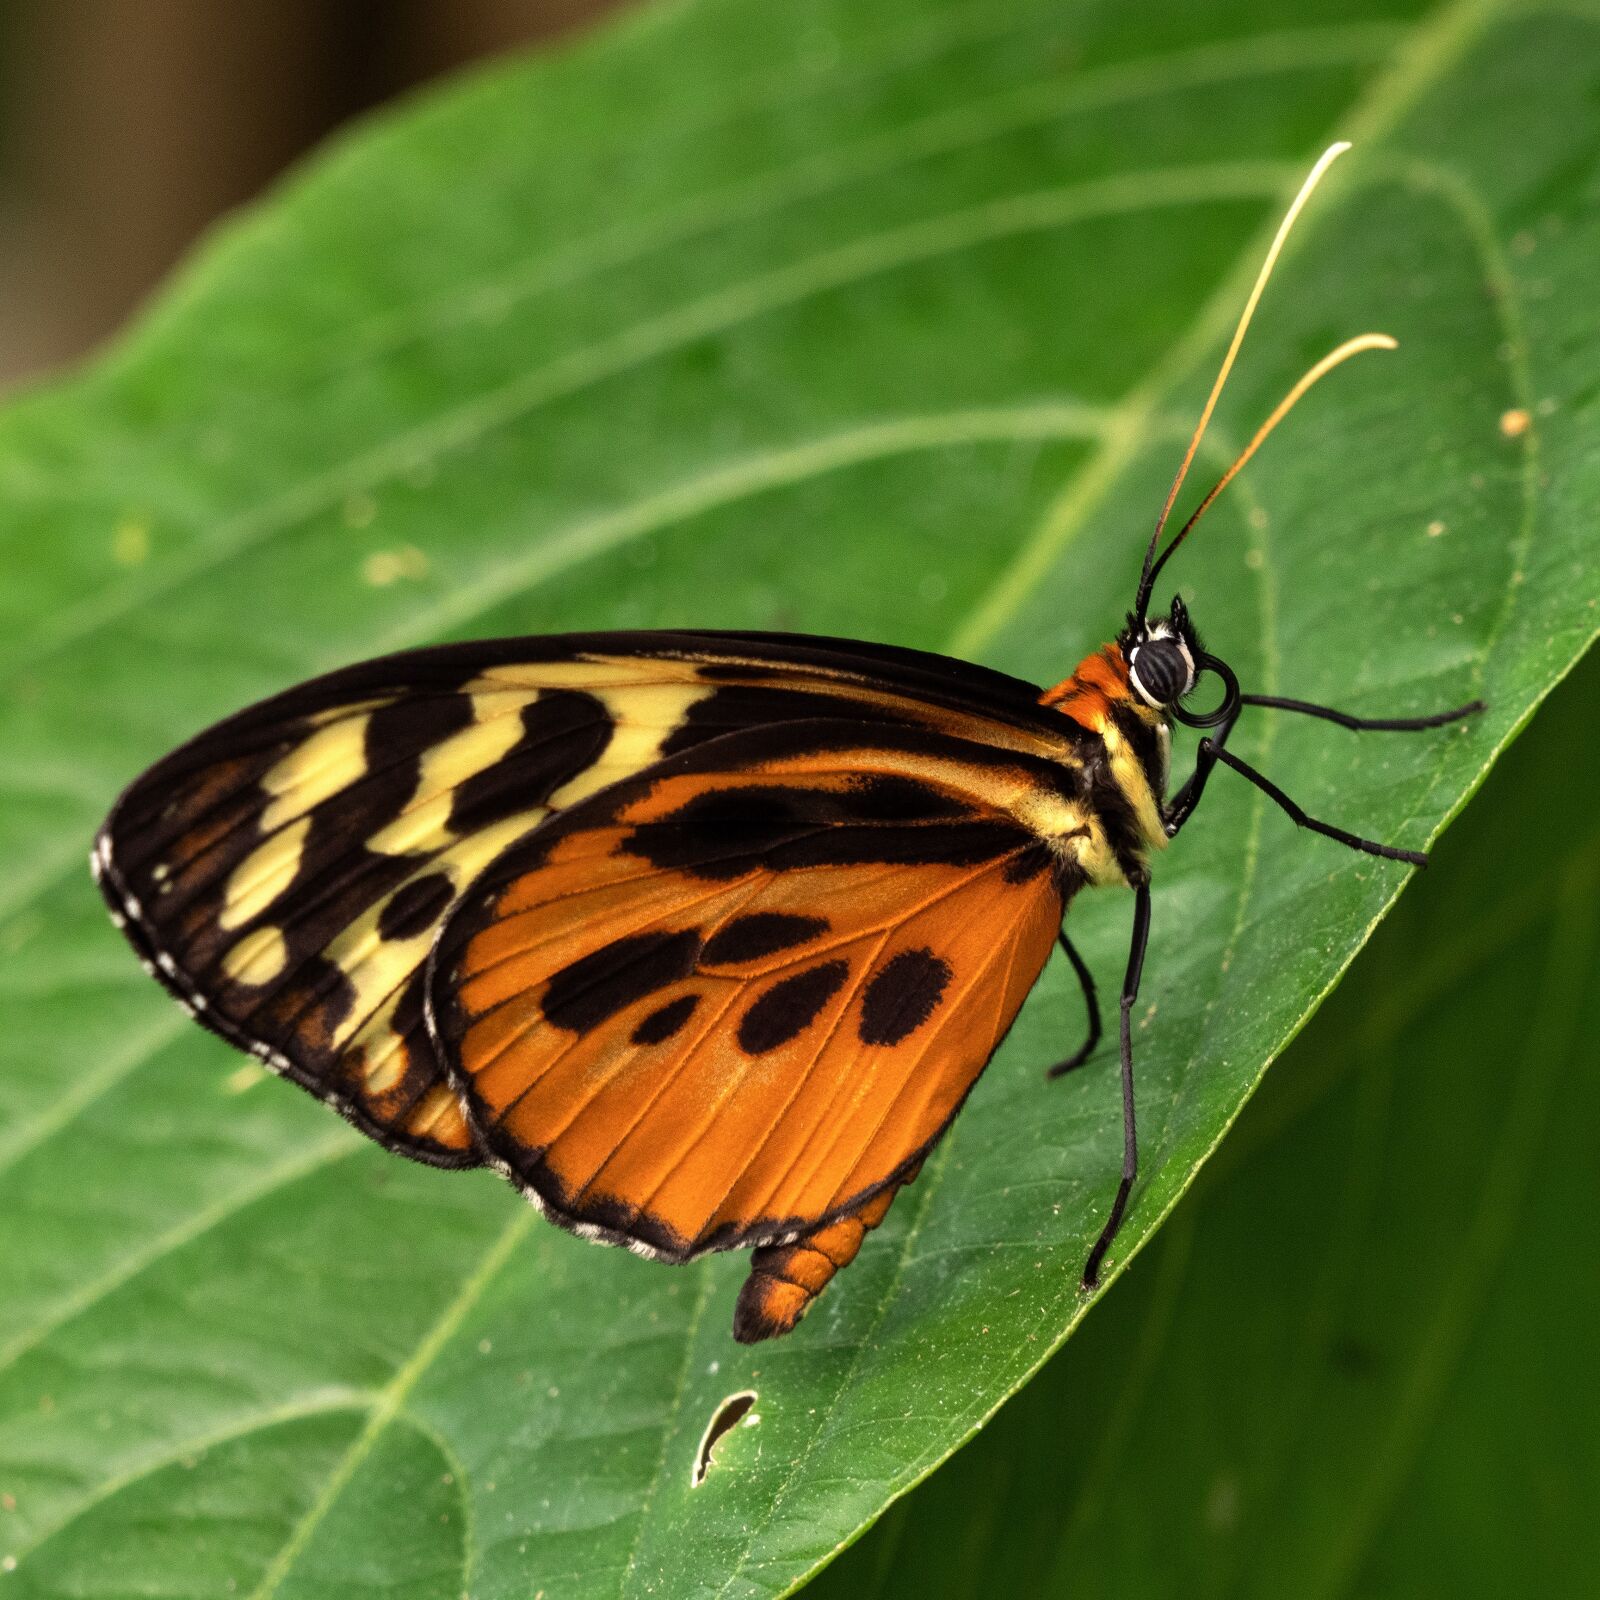 LEICA DG 100-400/F4.0-6.3 sample photo. Ecuador, butterfly, jungle photography